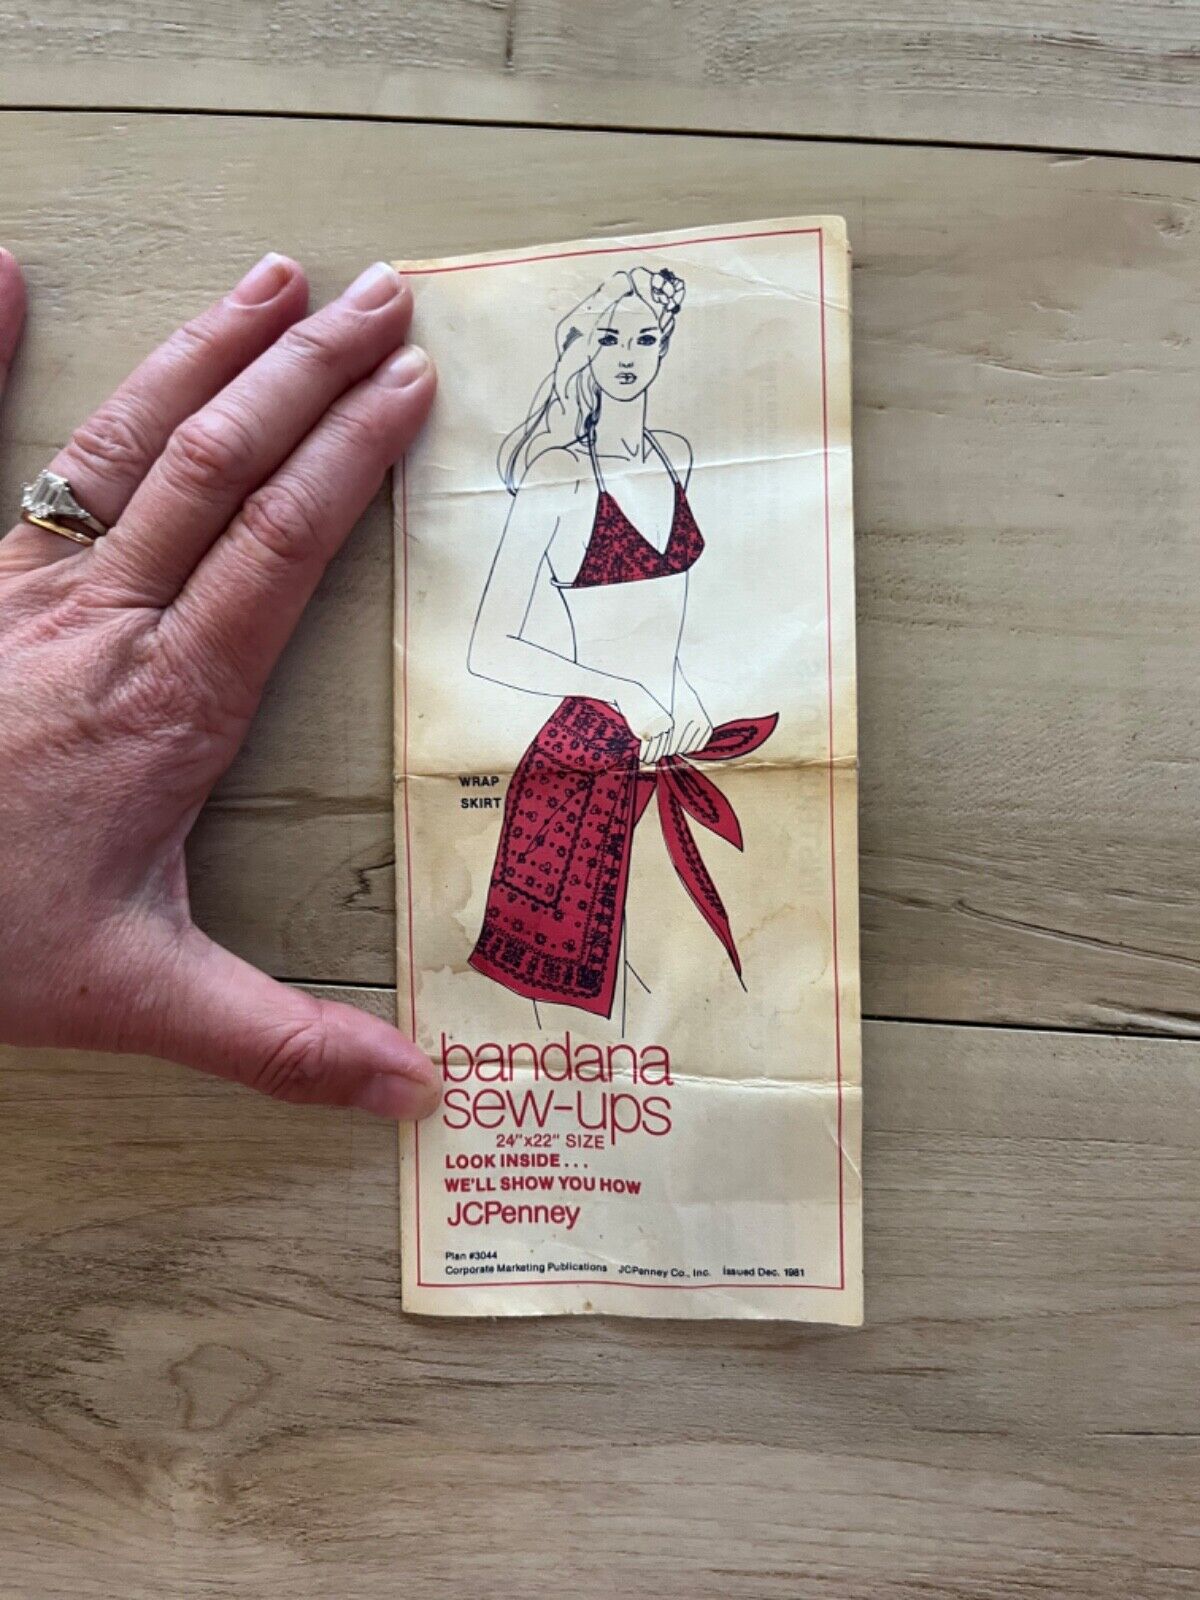 vintage 1981 JcPenny pamphlet Bandana sew ups leaflet vintage advertising